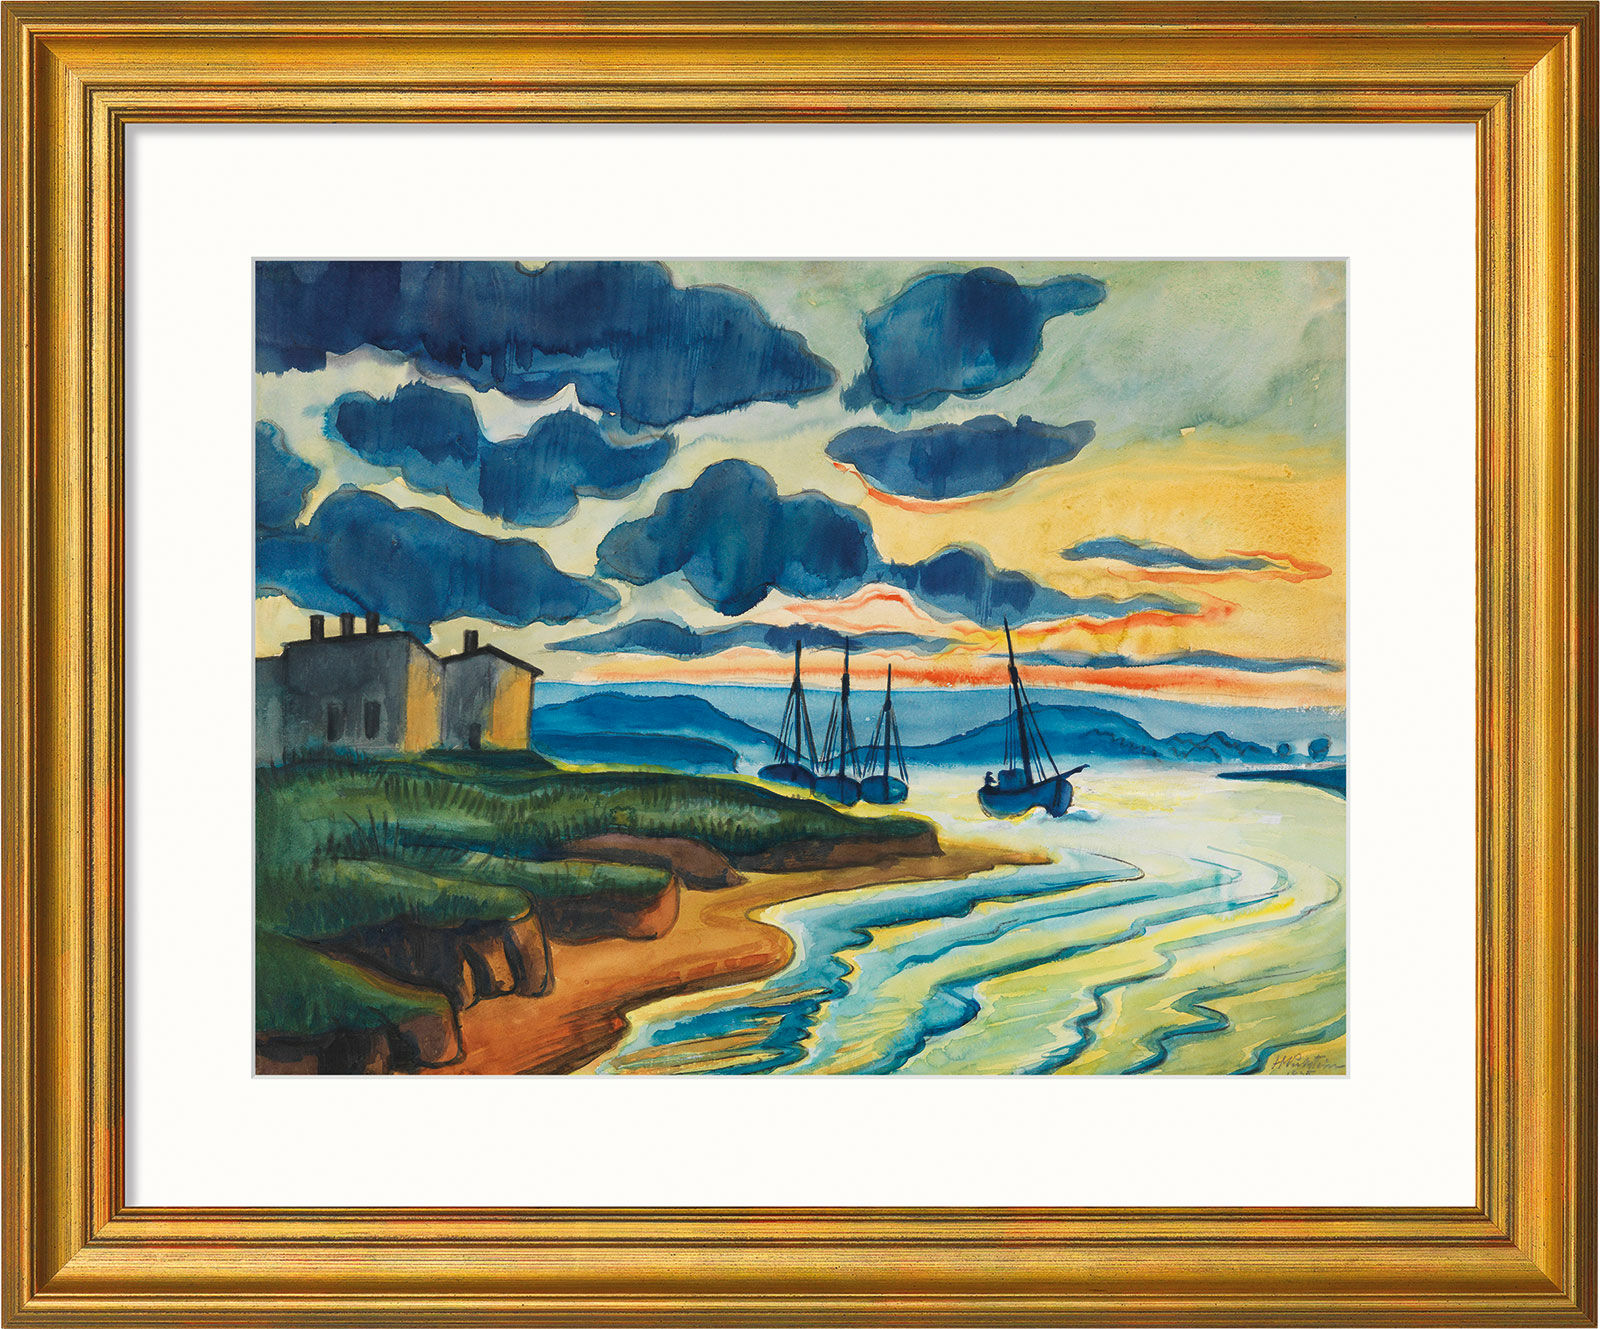 Beeld "Sunset" (1925), goudomrande versie von Max Pechstein